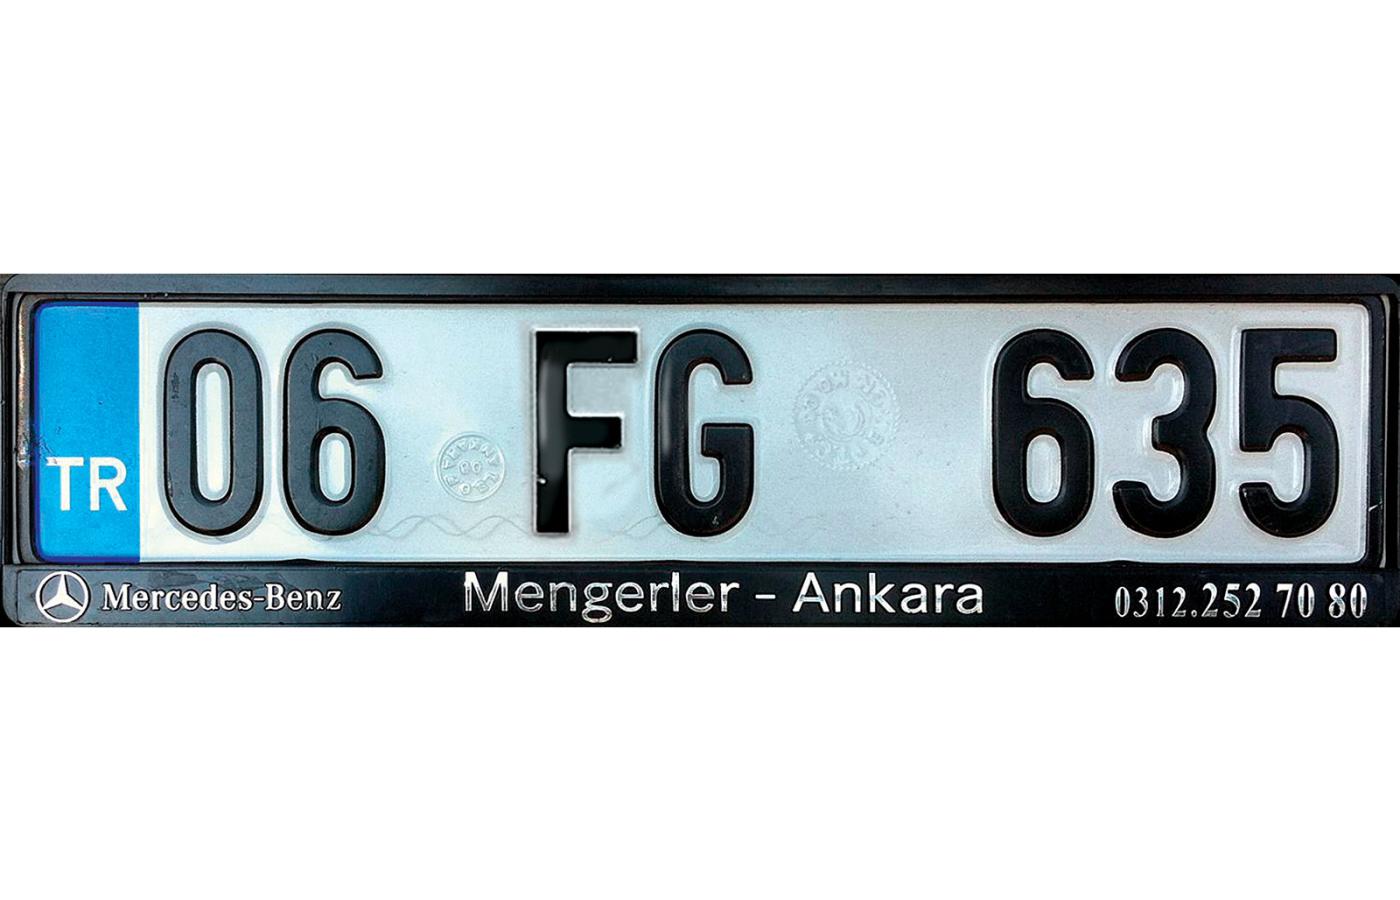 Litery FG na rejestracji wywołują w Turcji podejrzenia, że właściciel samochodu jest zwolennikiem Fethullaha Gülena.